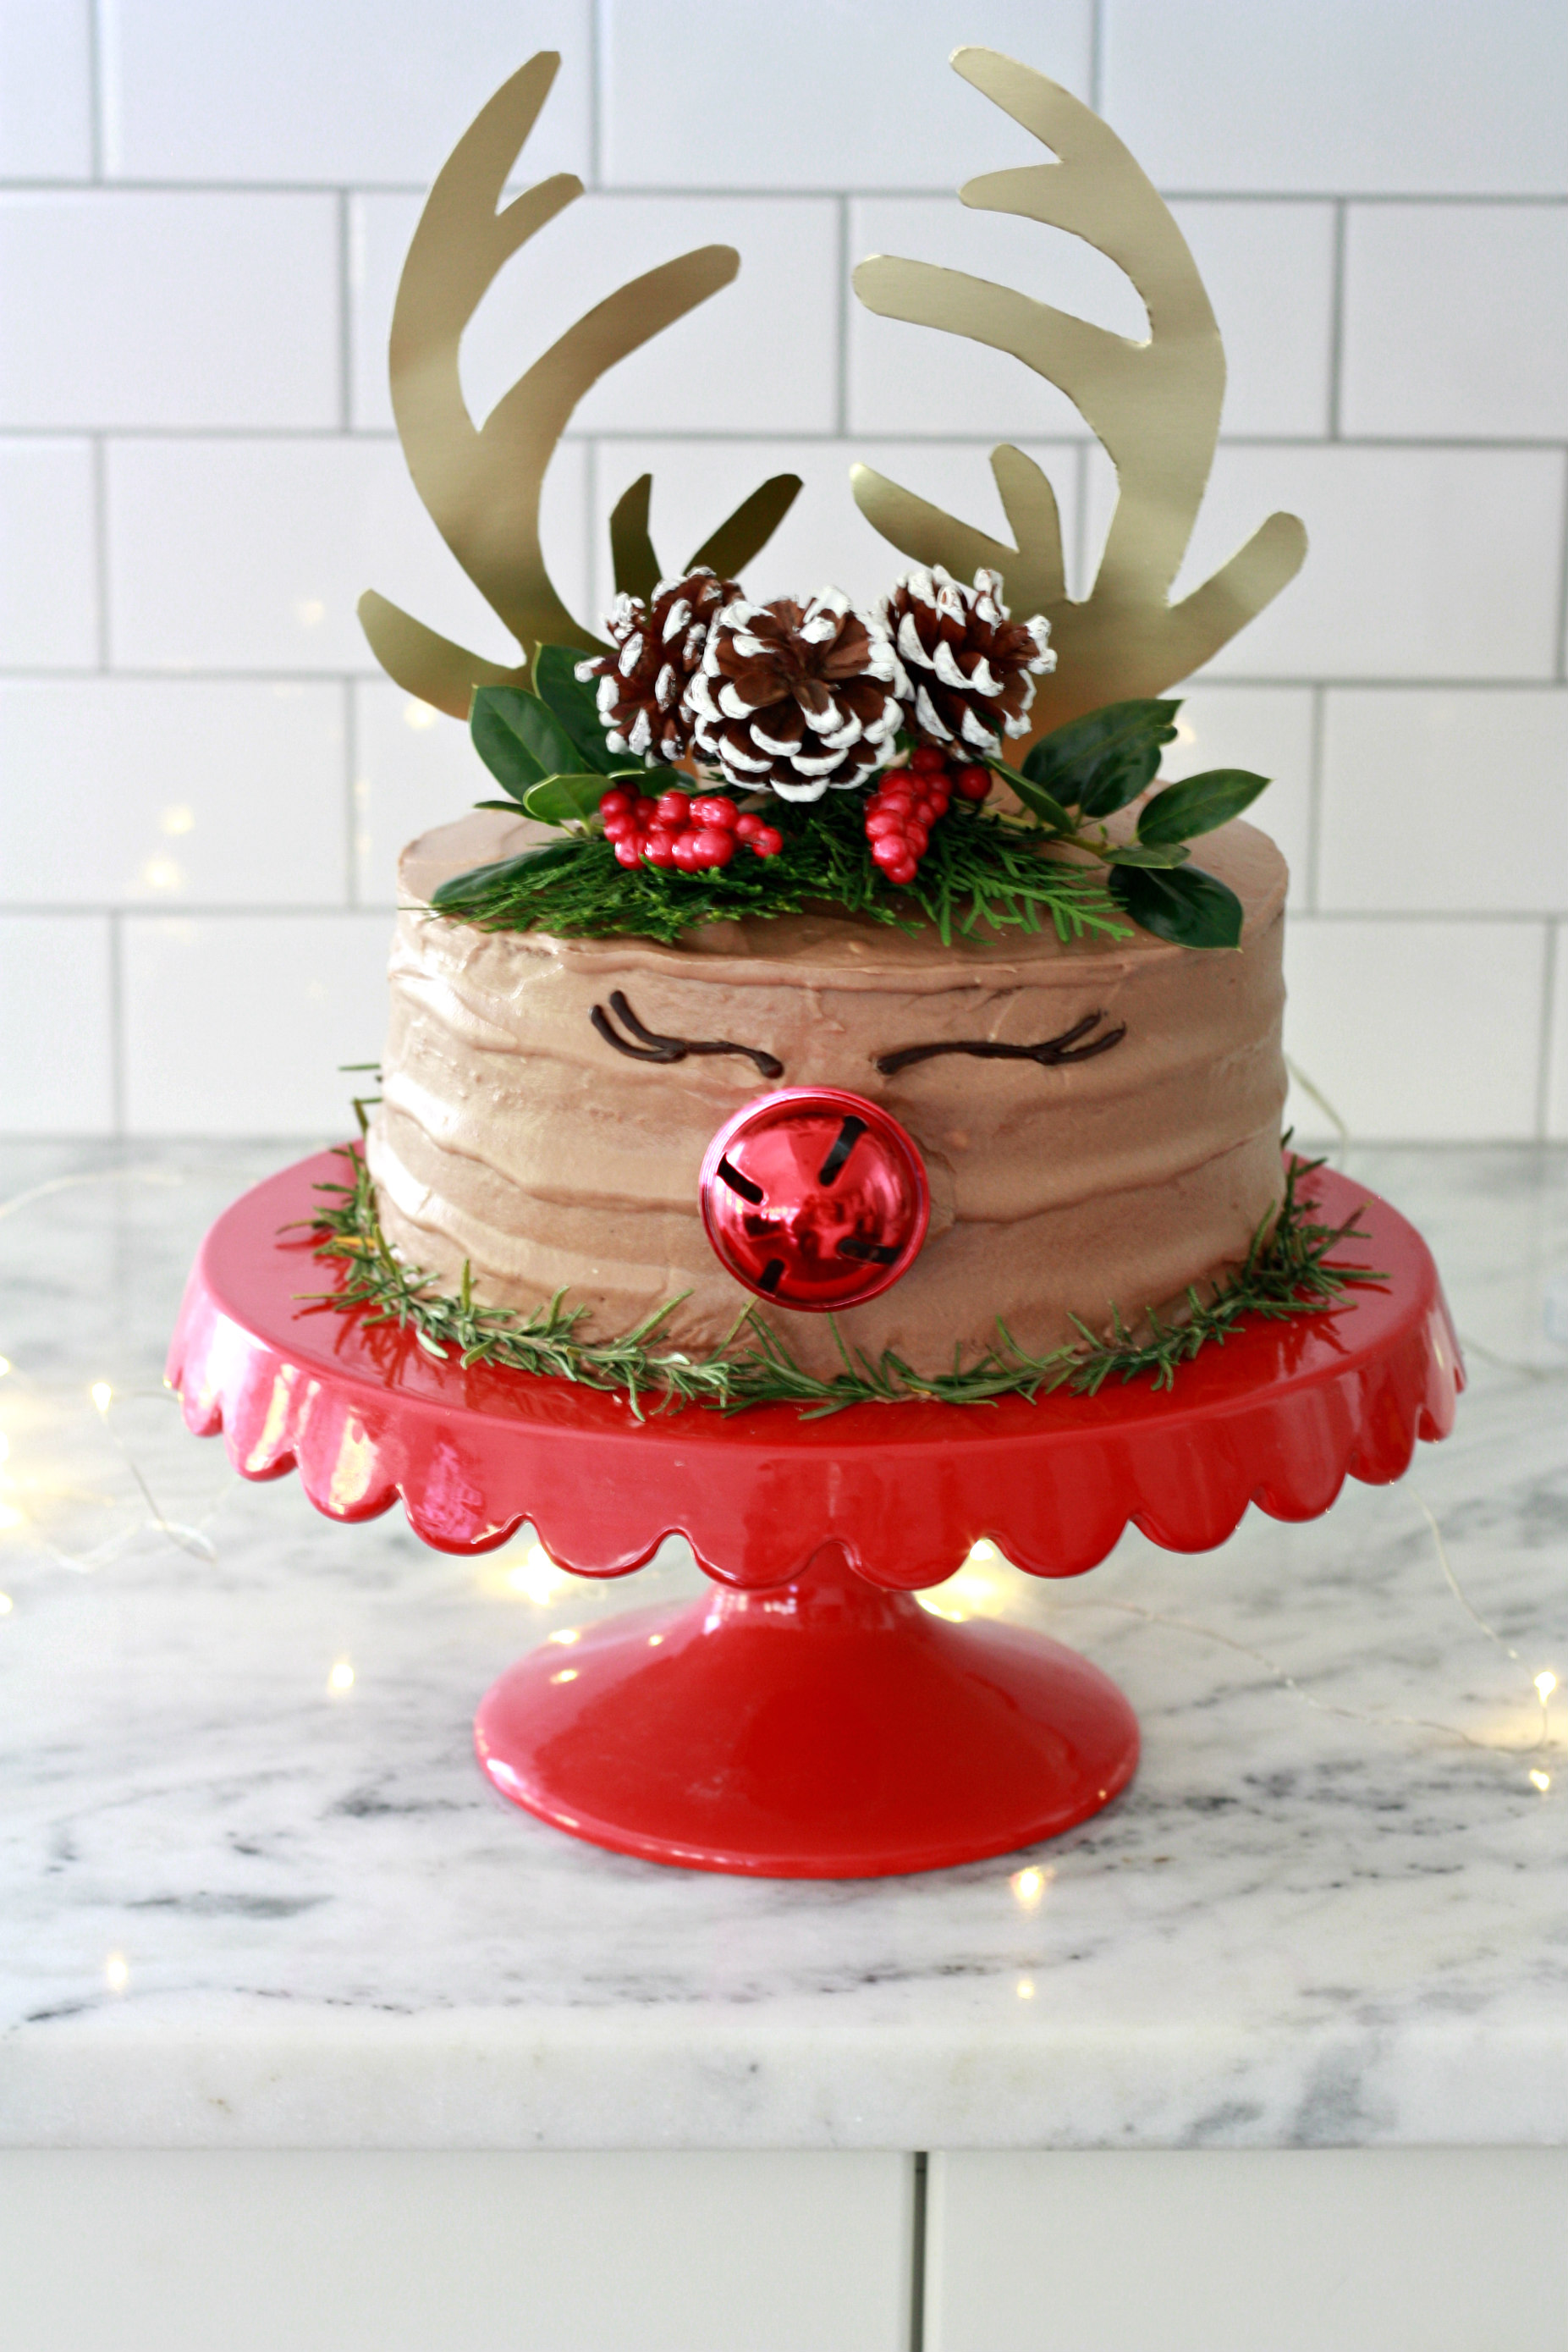 Reindeer Antler Cake Decor Kit Topper Glitter Gold For Christmas Birthday Party 